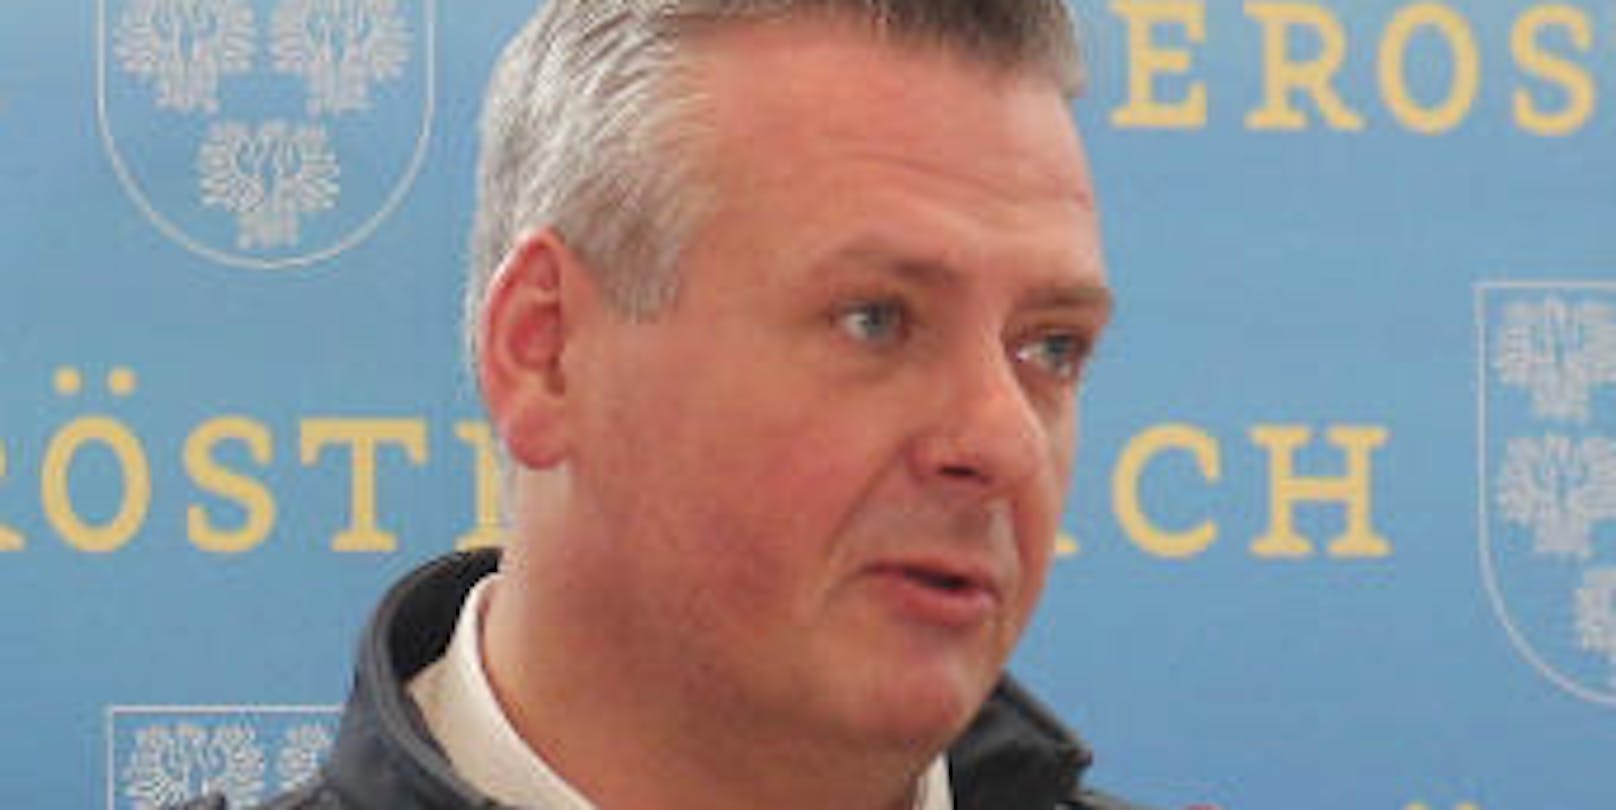 Landesfeuerwehrkommandant Dietmar Fahrafellner